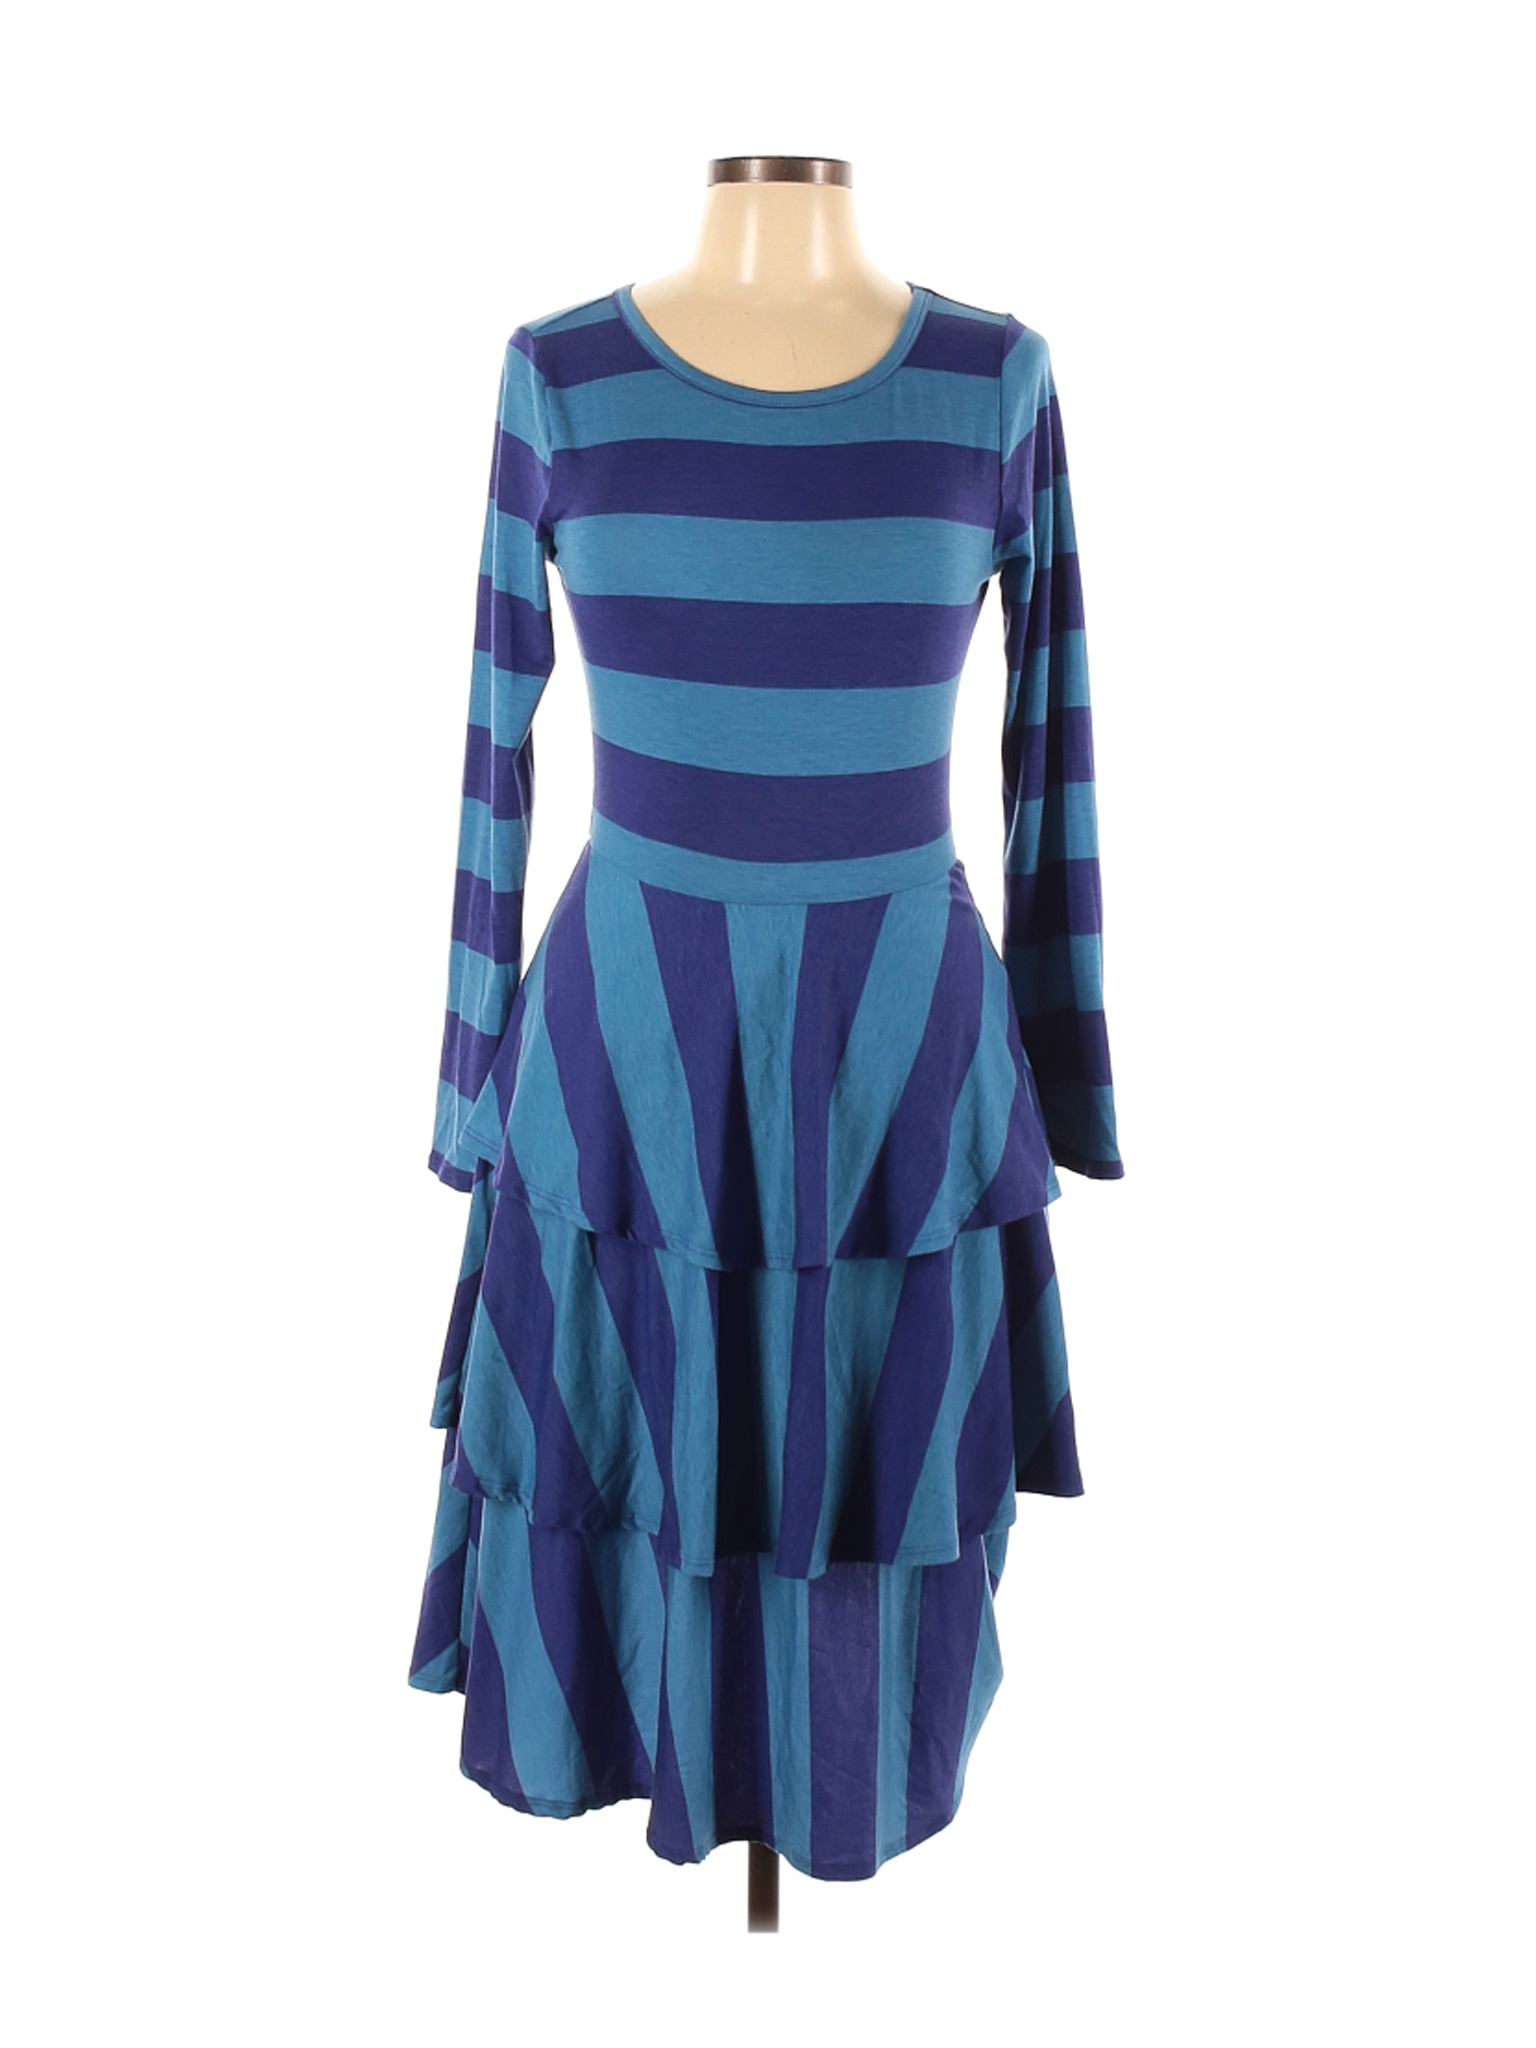 Lularoe Women Blue Casual Dress M | eBay